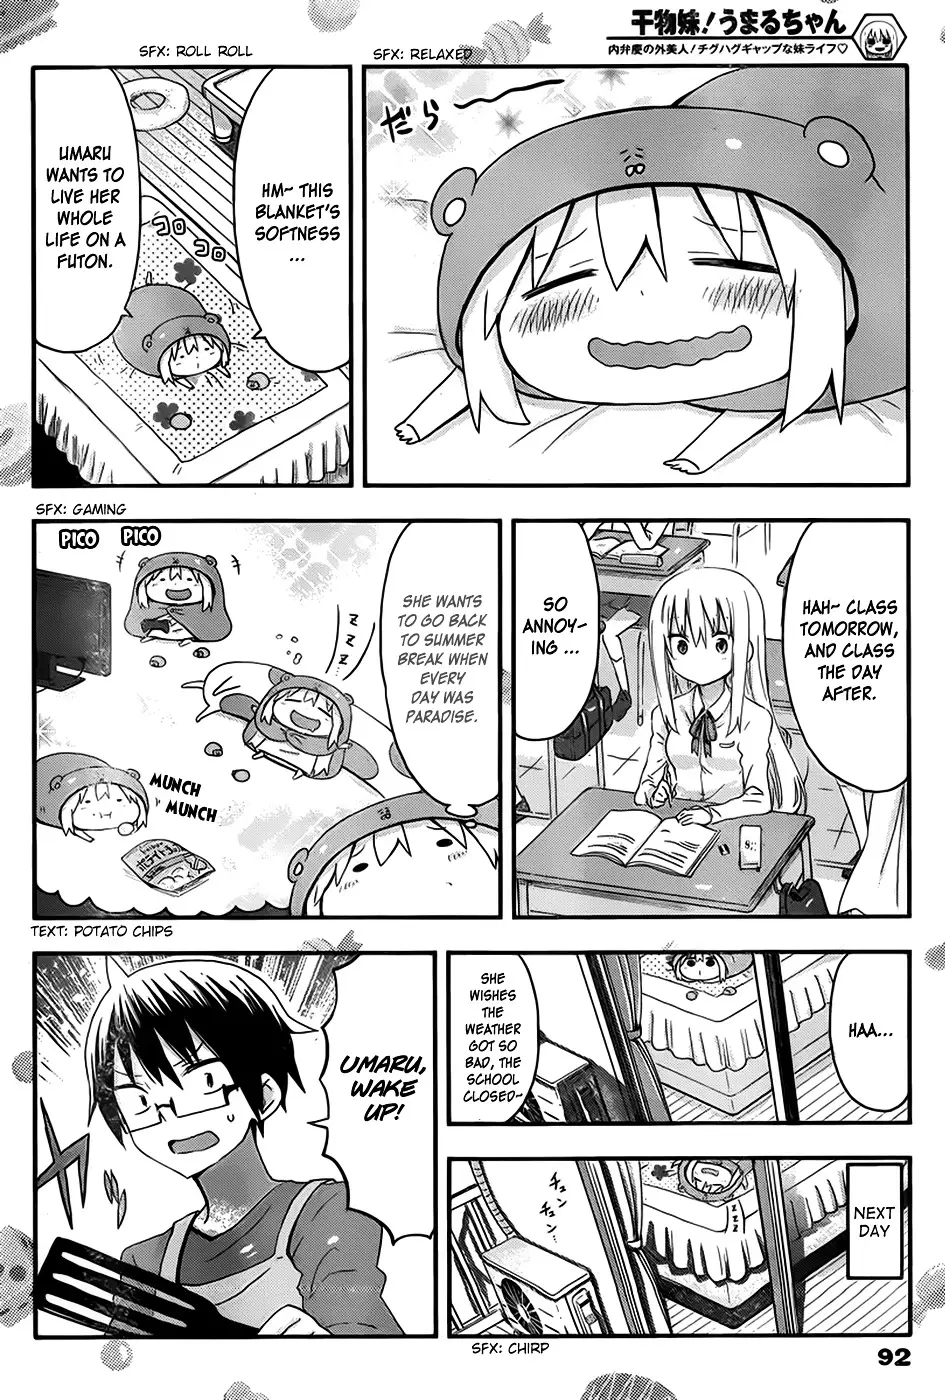 Himouto! Umaru-Chan - 76 page 3